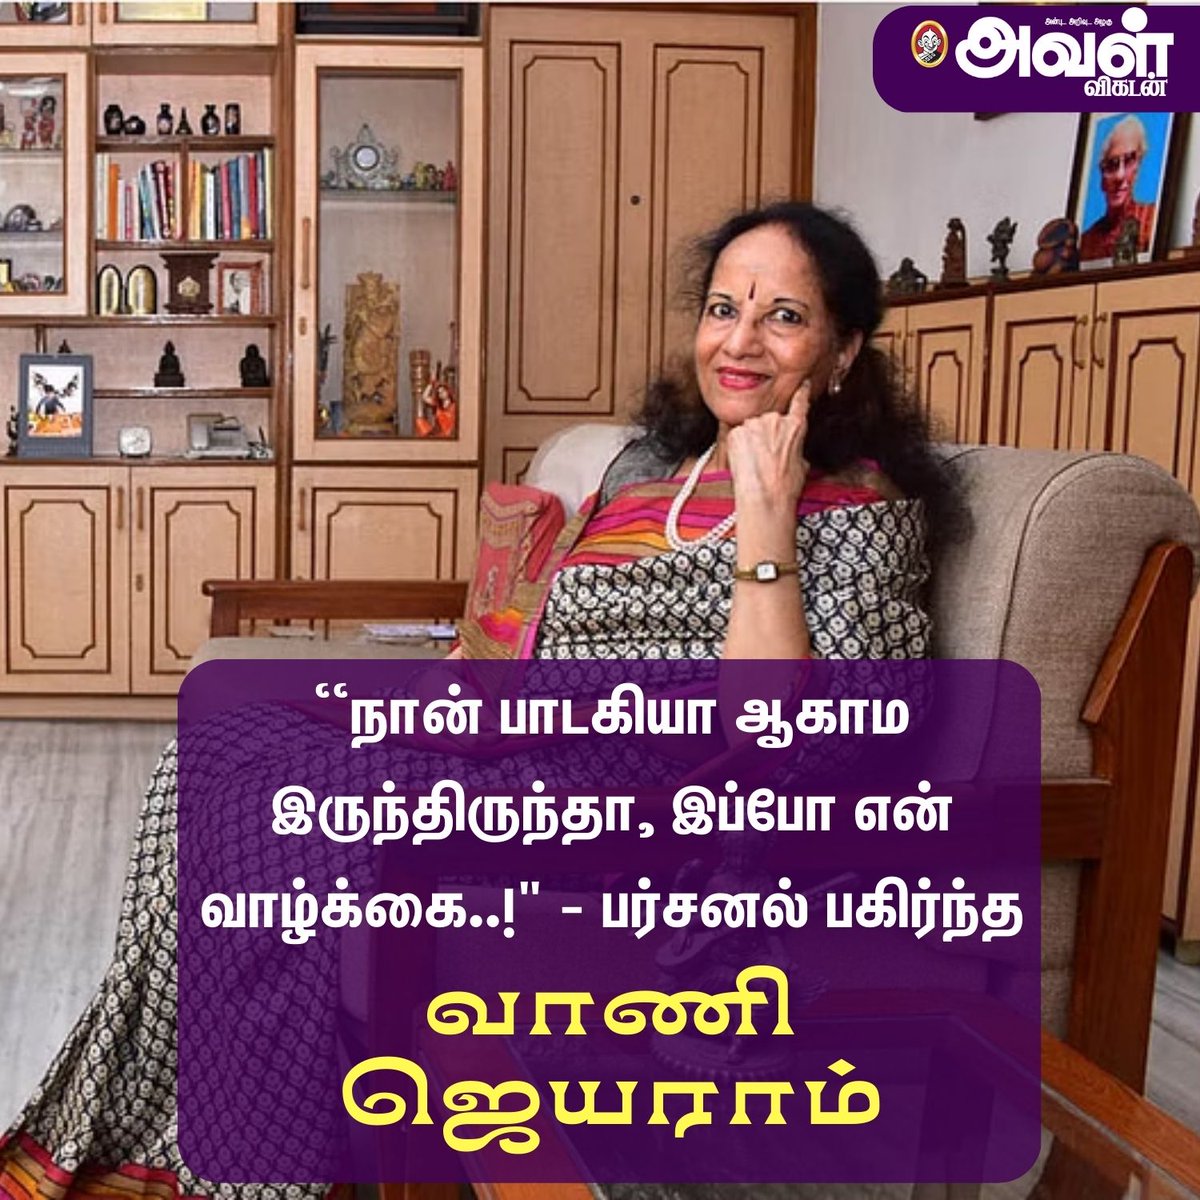 வாணி ஜெயராமின் பர்சனல் பக்கங்கள்!

#VaniJairam | #RIP | #Singer | #TamilSinger